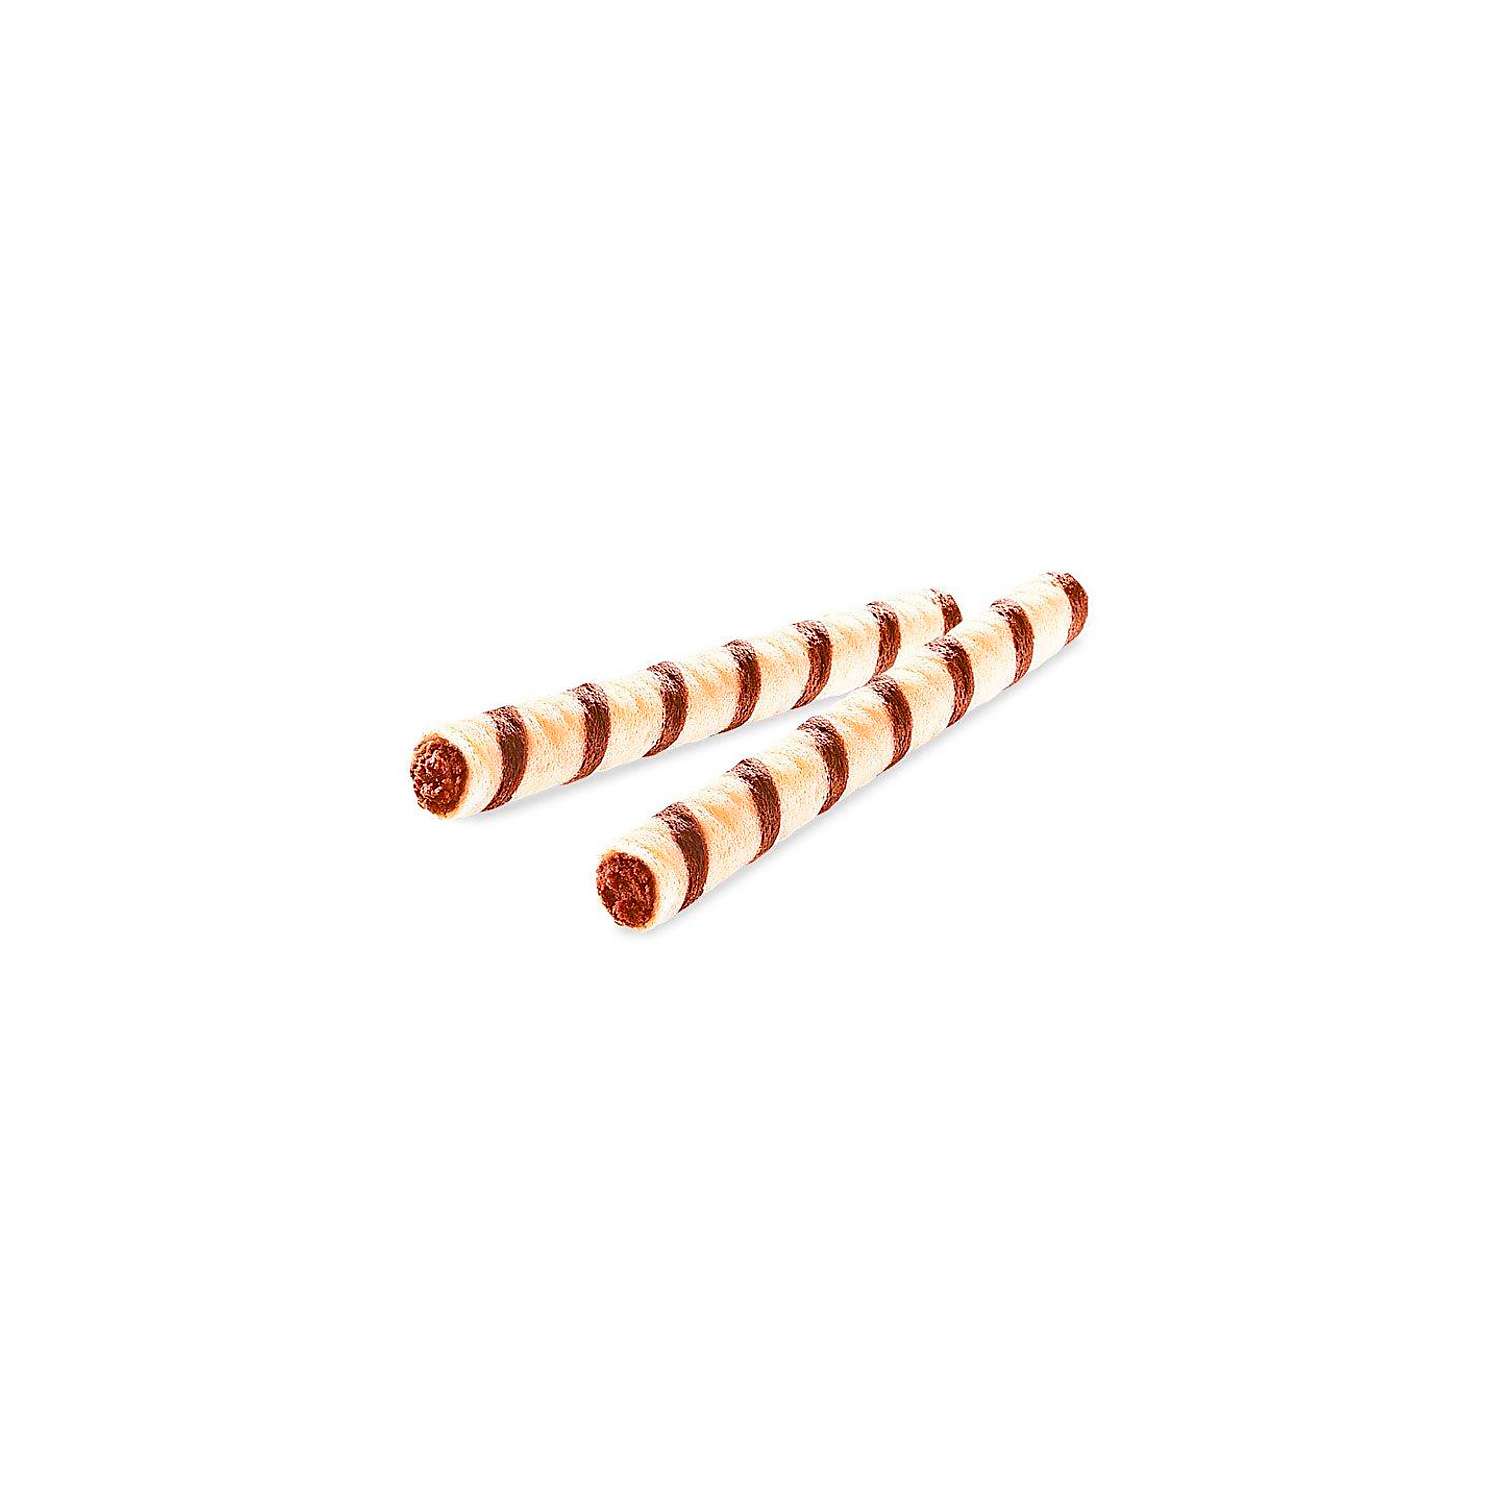 Трубочки вафельные KDV Лесной орех 4 кг - фото 1